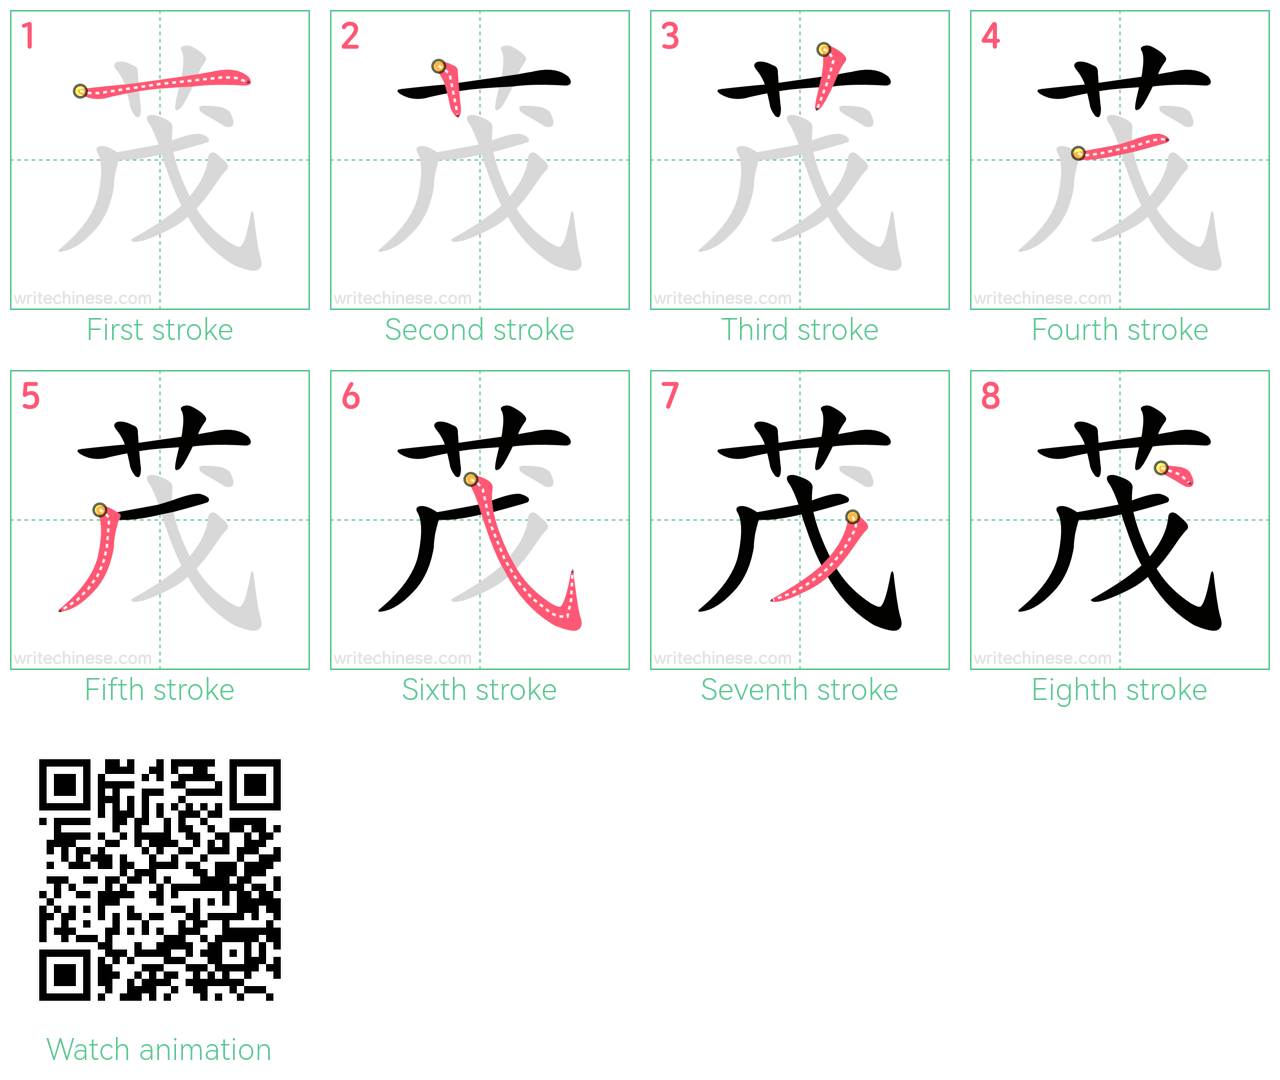 茂 step-by-step stroke order diagrams